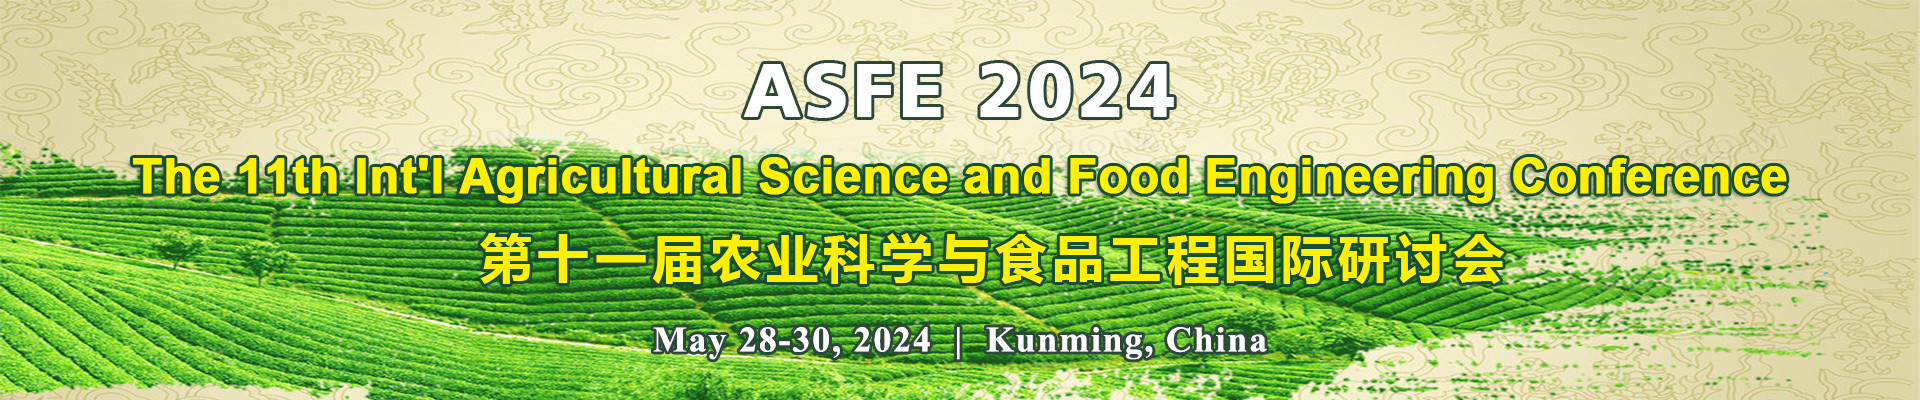 第十一屆農業科學與食品工程國際研討會(ASFE 2024)